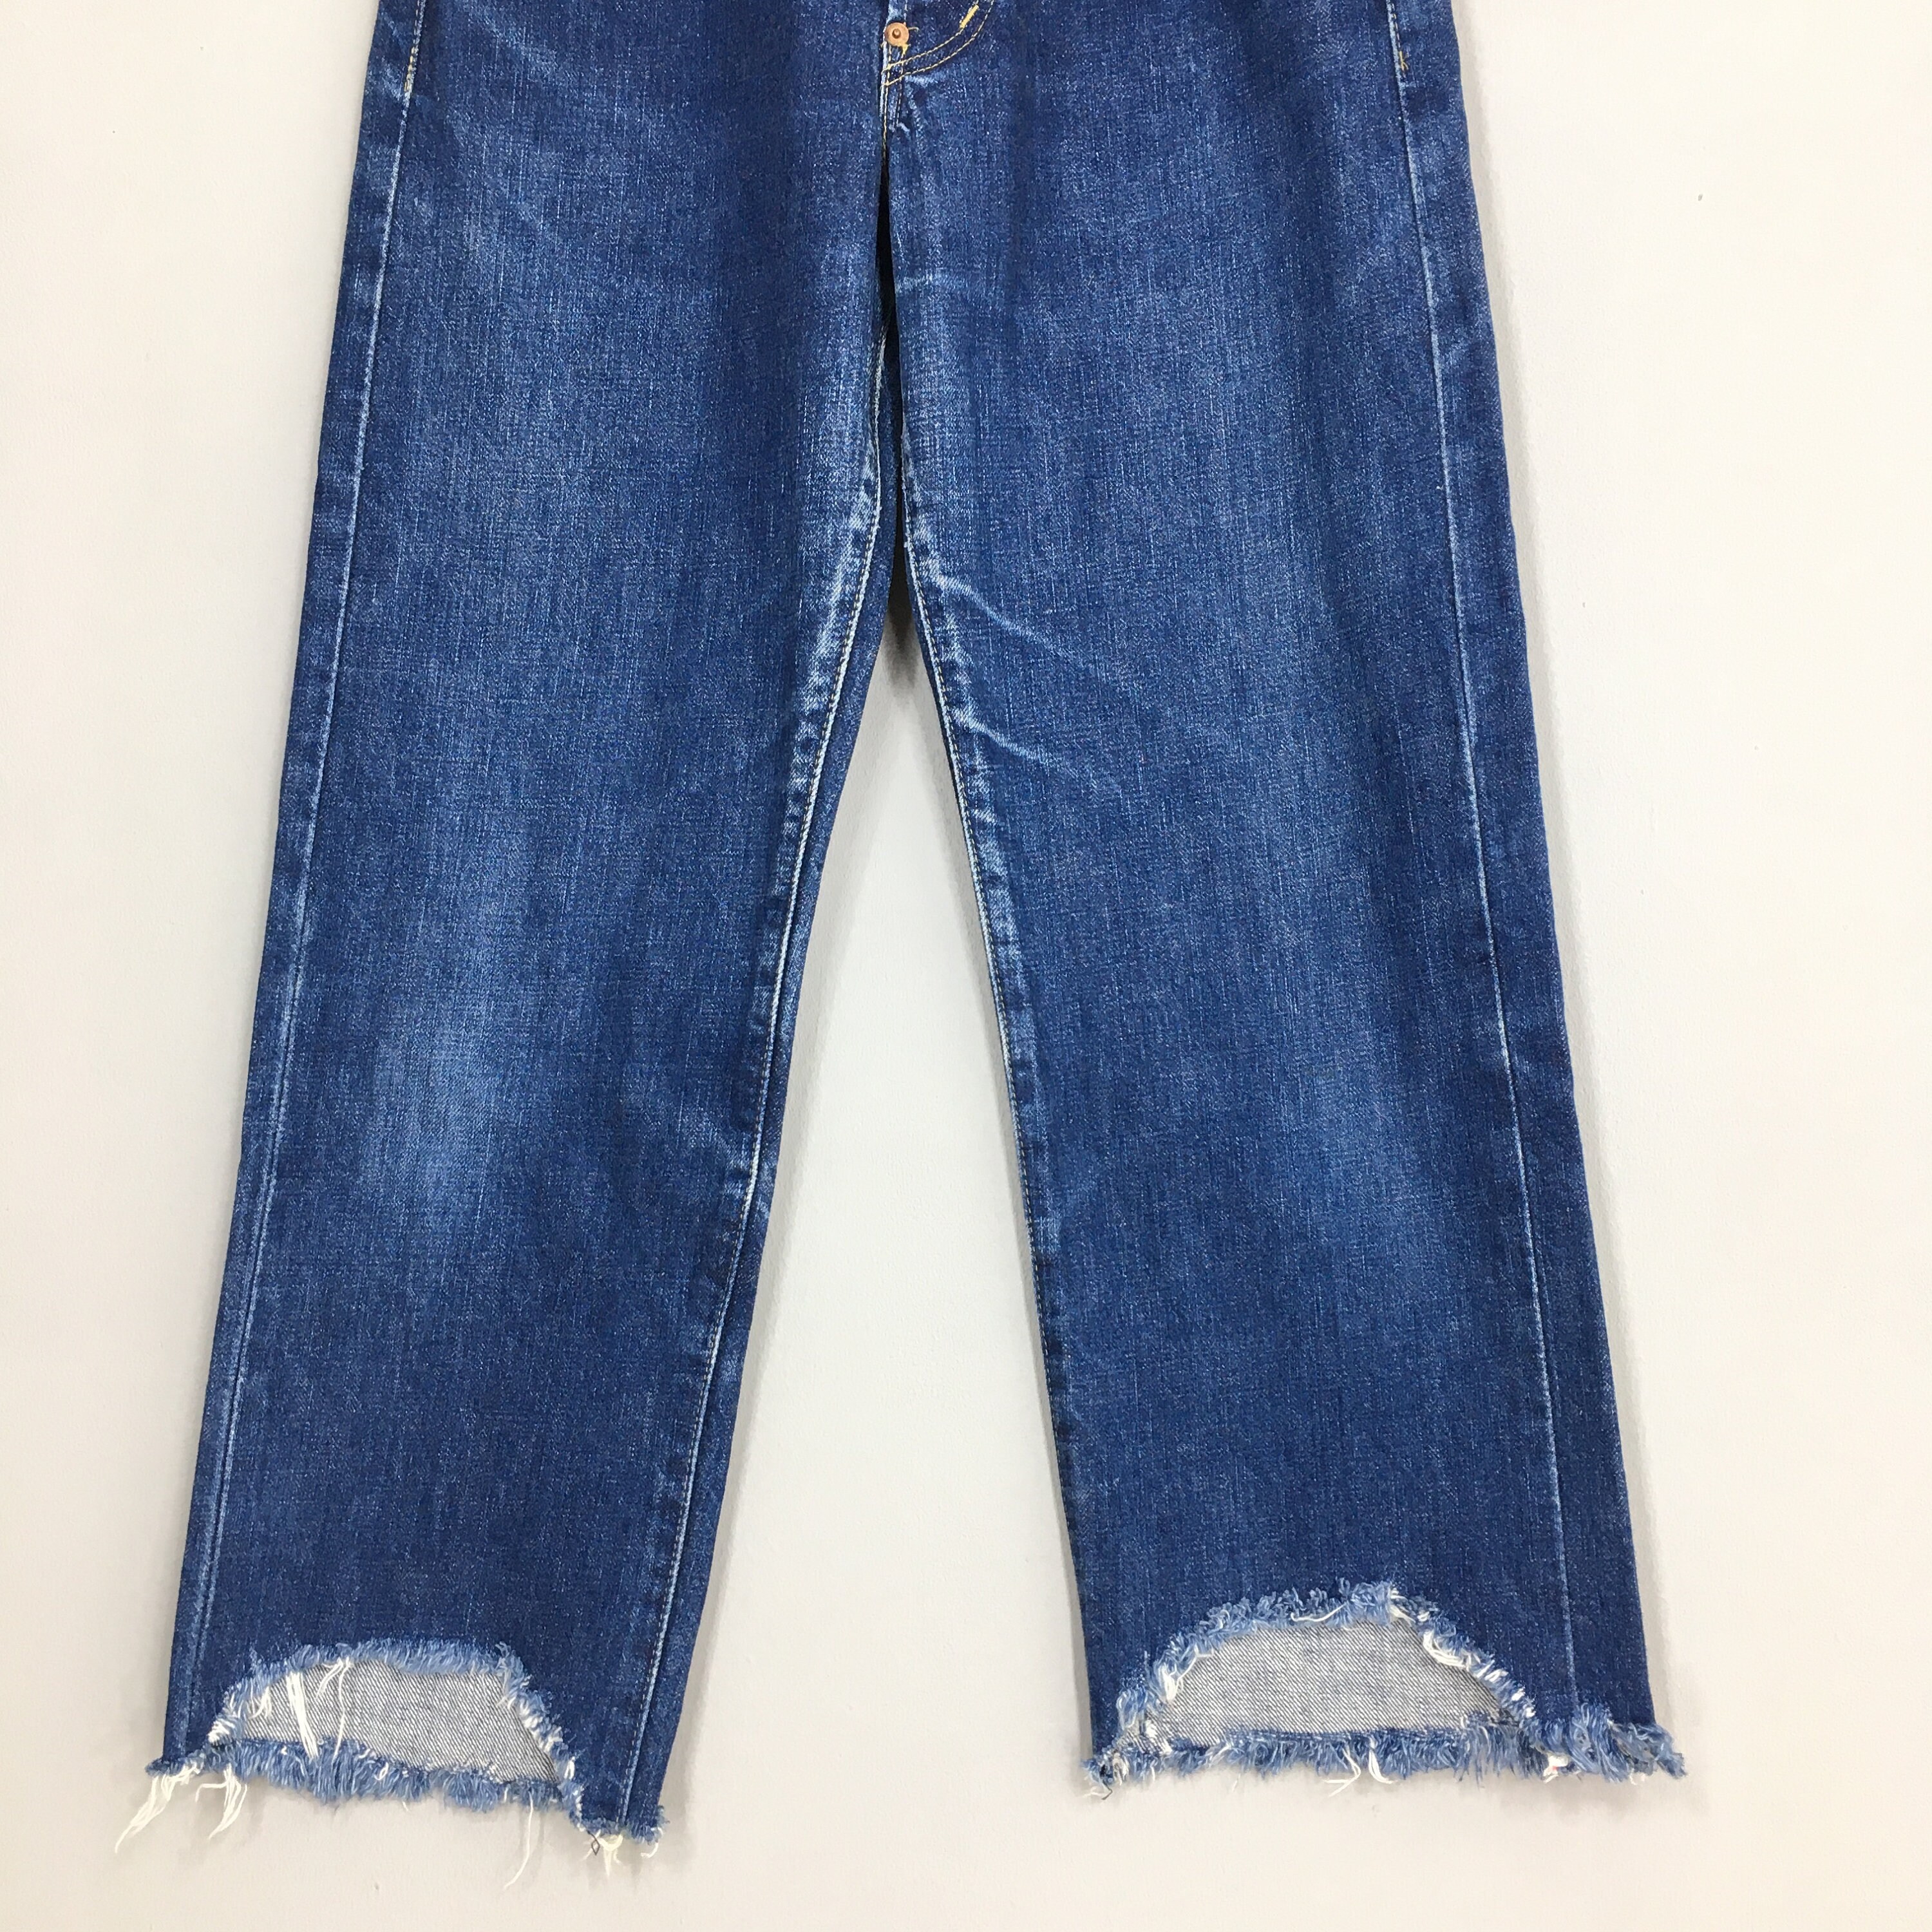 Size 30x25 Vintage Levi's 701XX LVC Big E Japan Selvedge Jeans 